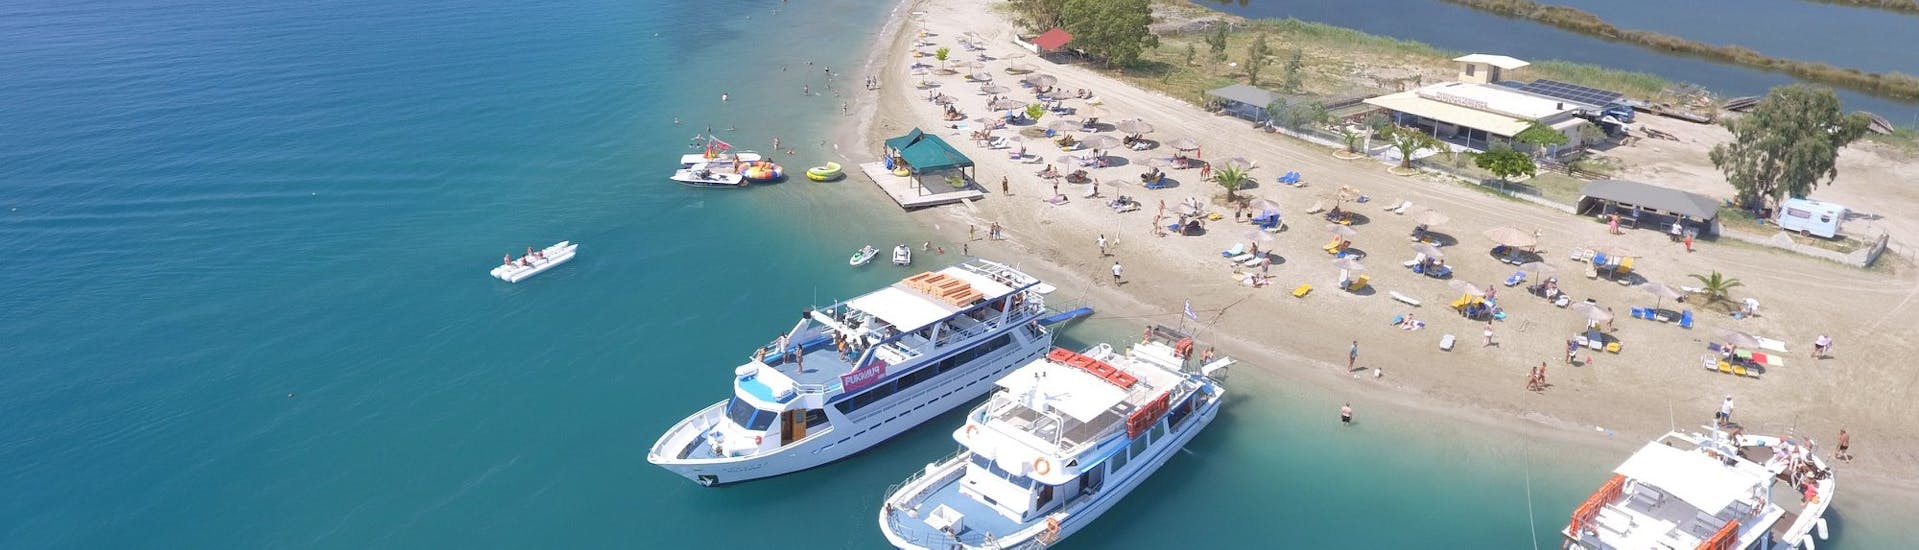 Bootstour von Korfu Stadt - Vido island mit Schwimmen & Sightseeing.